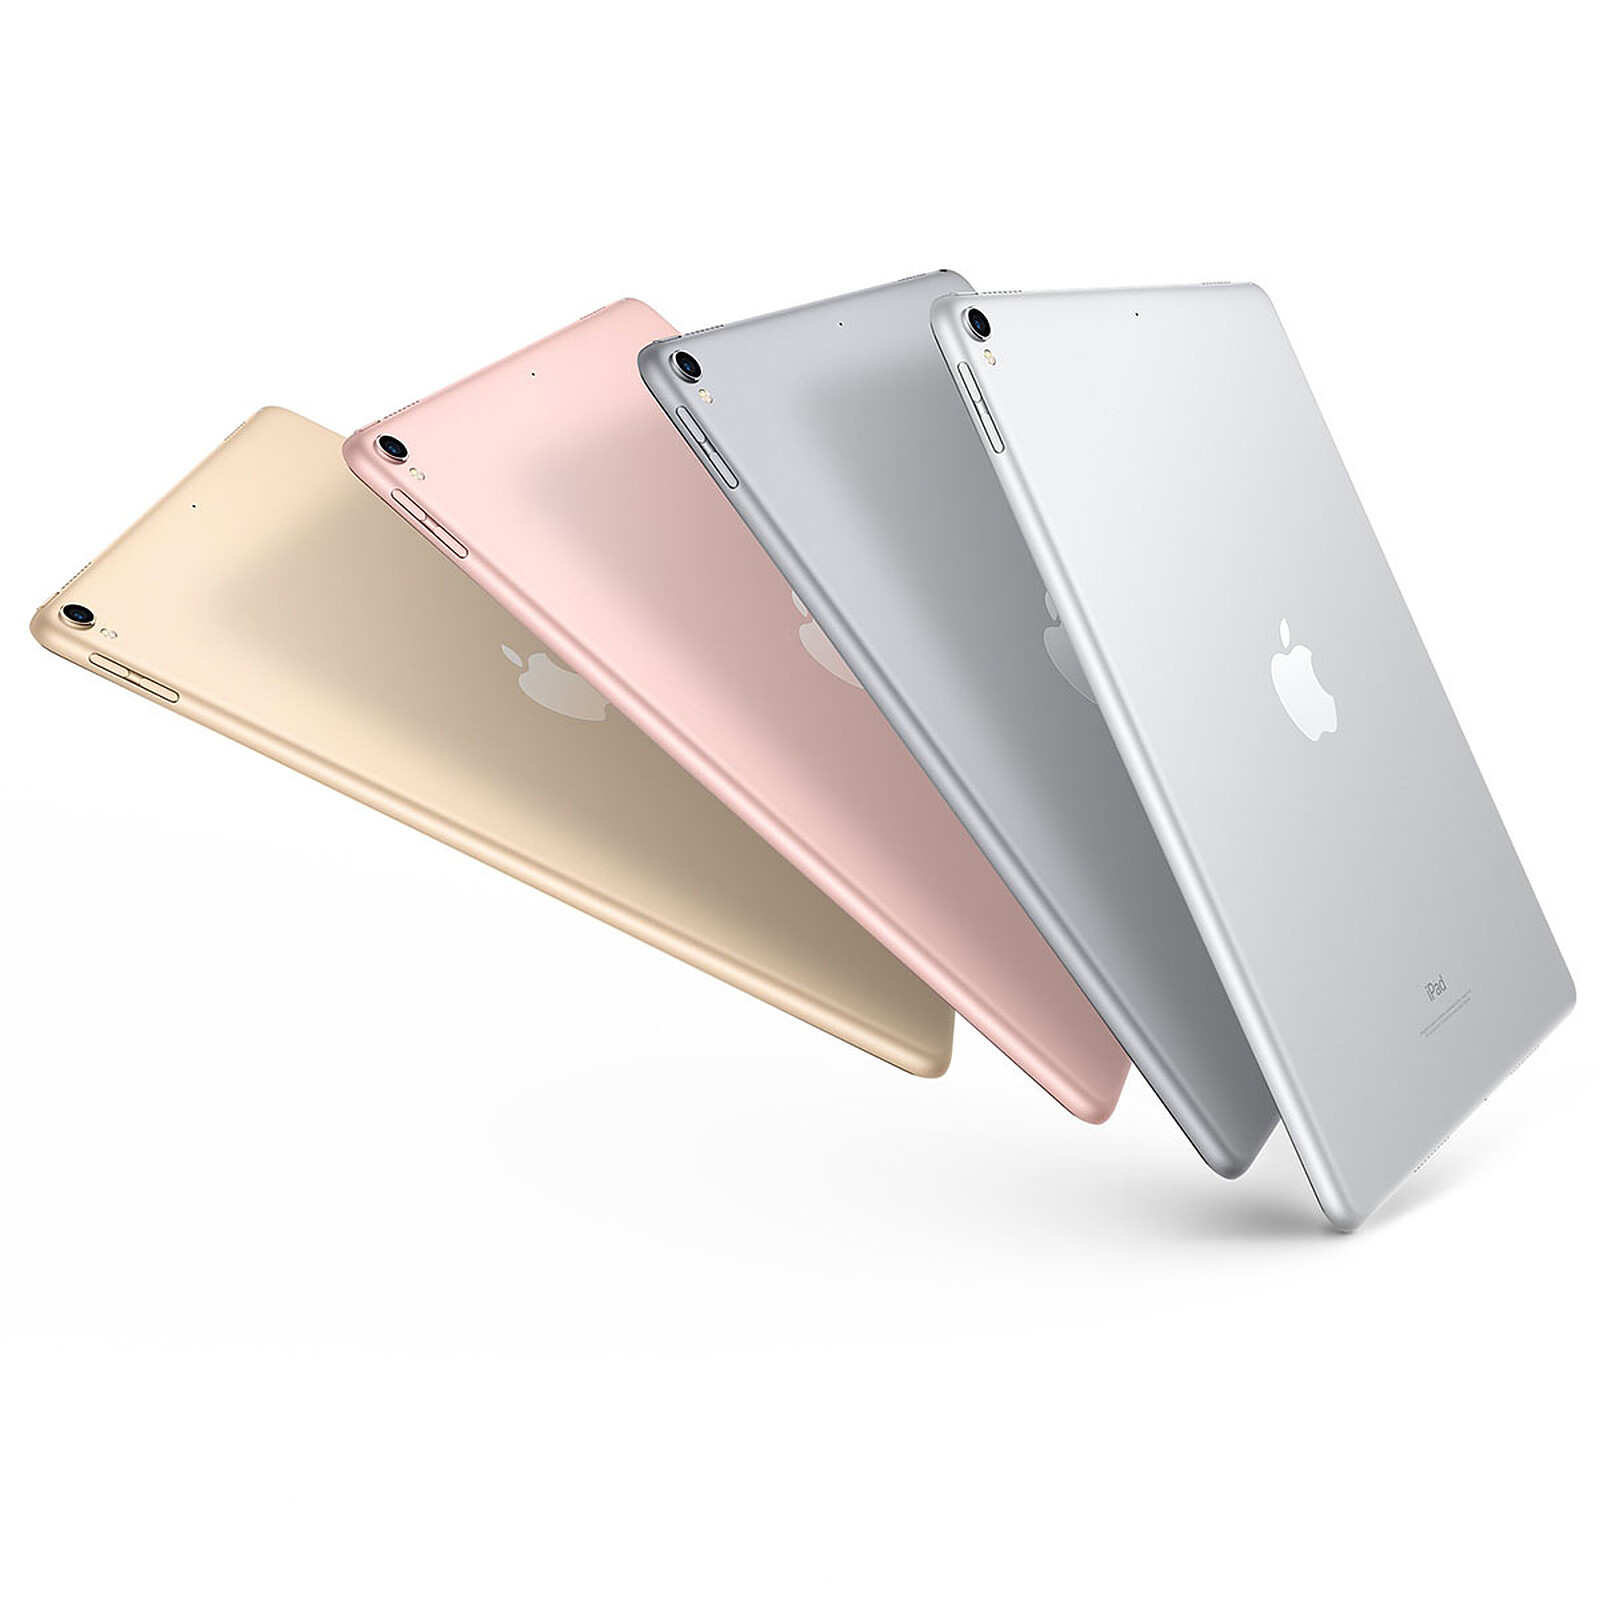 Apple iPad Pro 10.5 pulgadas 256GB Wi-Fi Wi-Fi + Lado Celular Gris